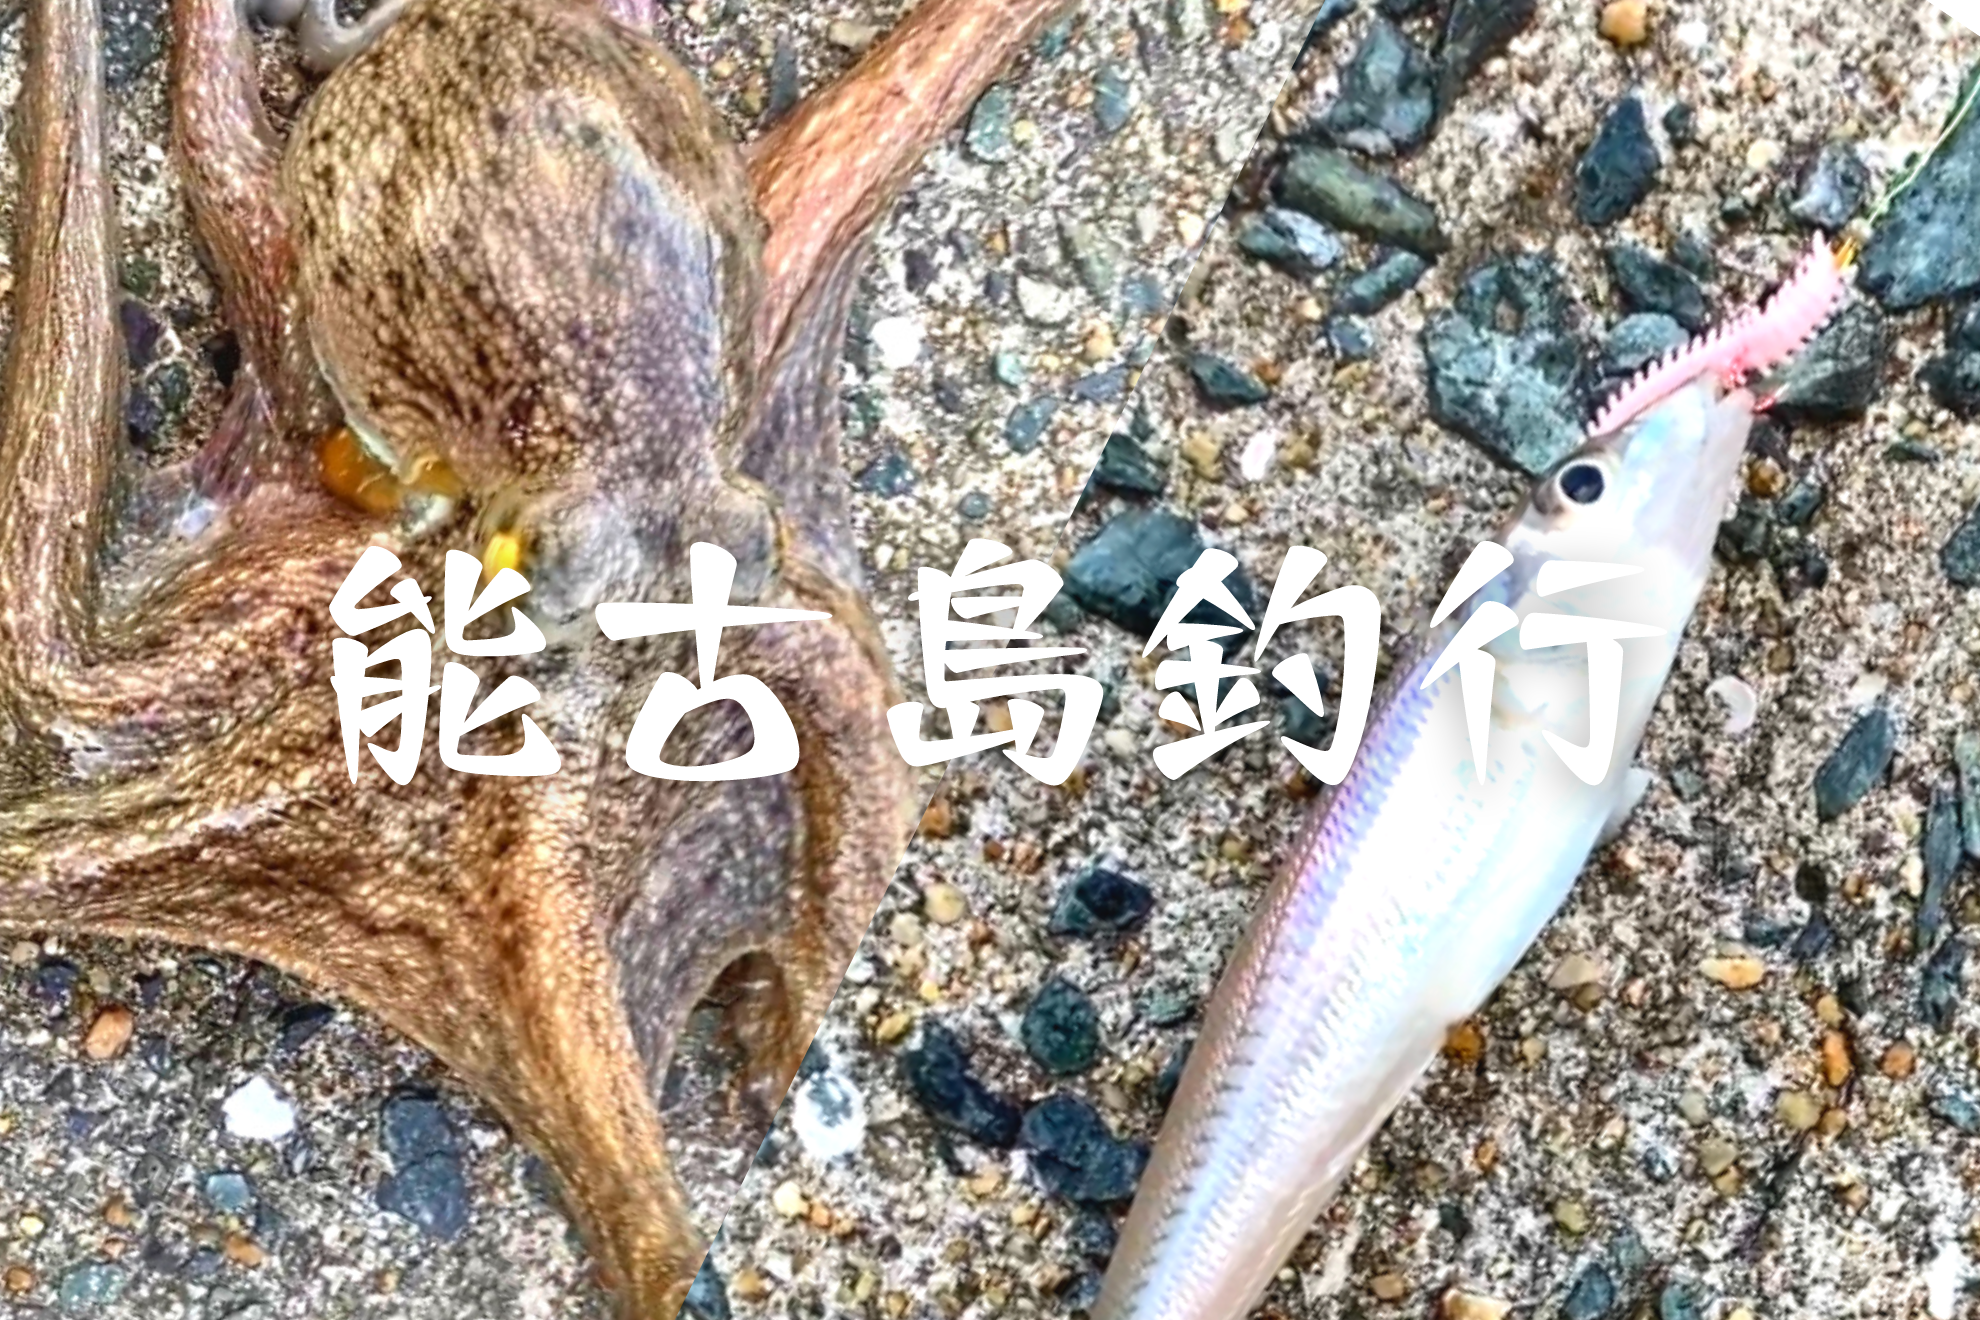 能古島でキス釣り 擬似餌のパワーイソメでキスとまさかのタコが釣れました ビビッと感じて